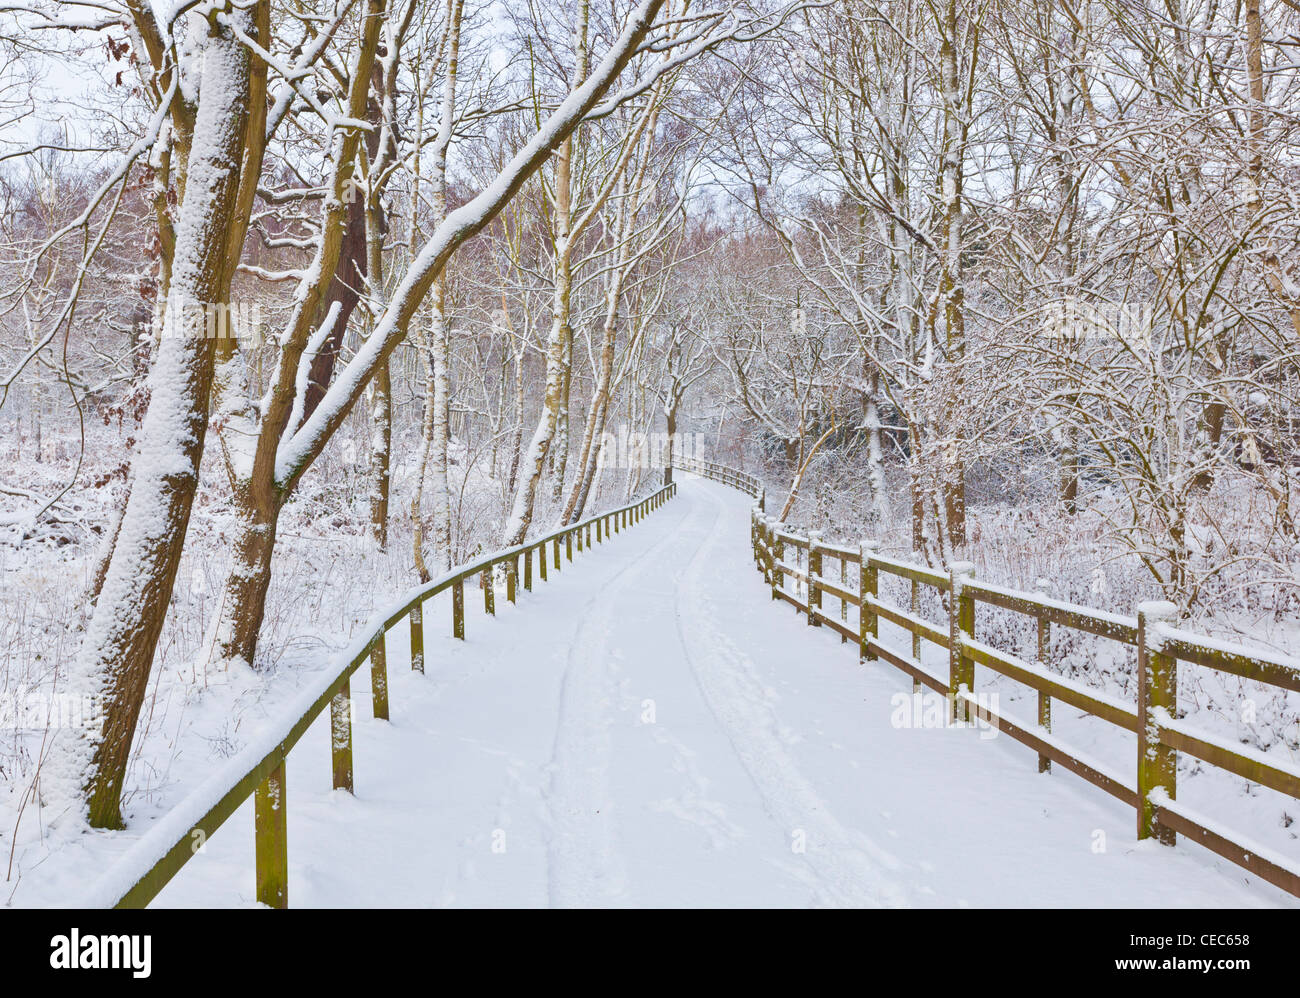 Scène d'hiver paysage d'hiver Neige Fraîche sur la voie à travers Sherwood Forest Country Park Edwinstowe Notinghamshire Angleterre Royaume-Uni GB Europe Banque D'Images